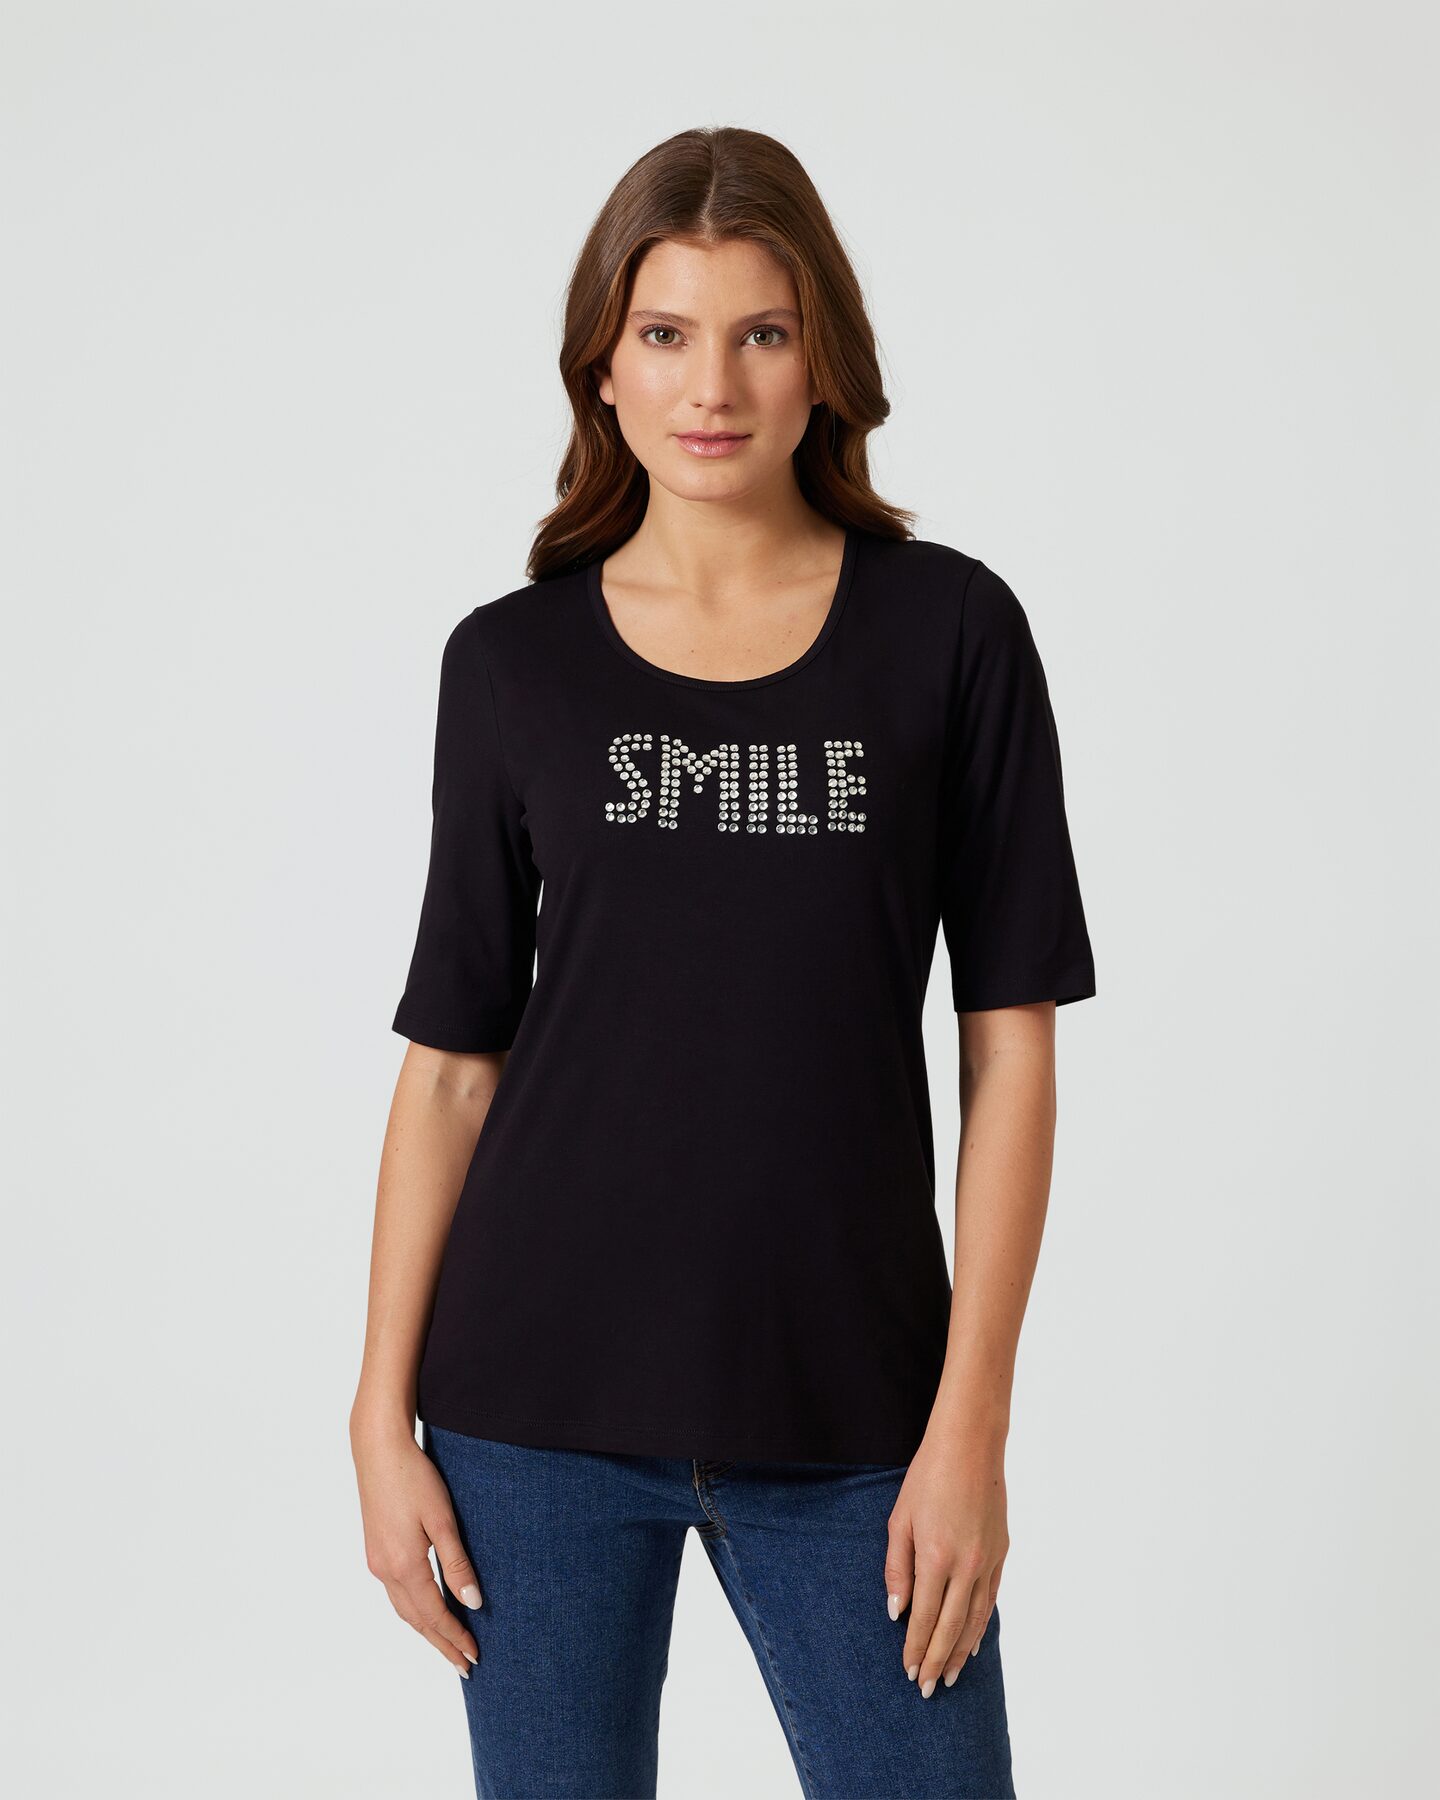 Produktabbildung für Shirt "Smile"